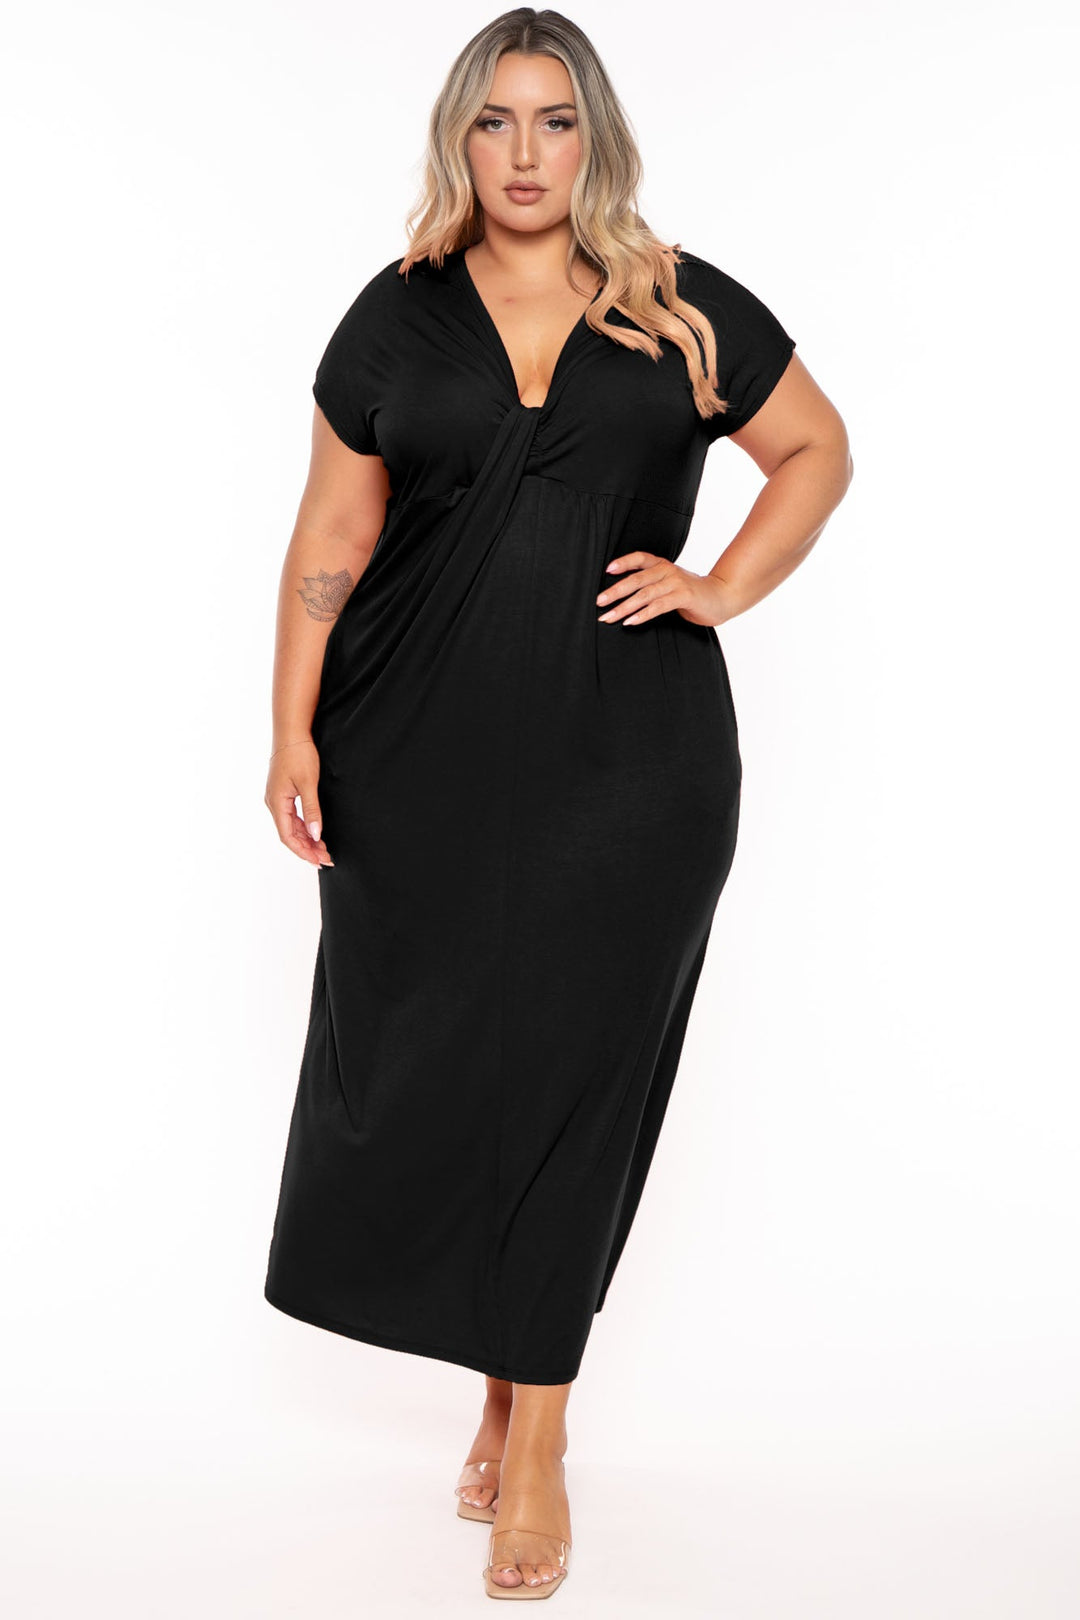 CULTURE CODE Dresses 1X / Black Plus Size Grace Twist Front  Maxi Dress  - Black